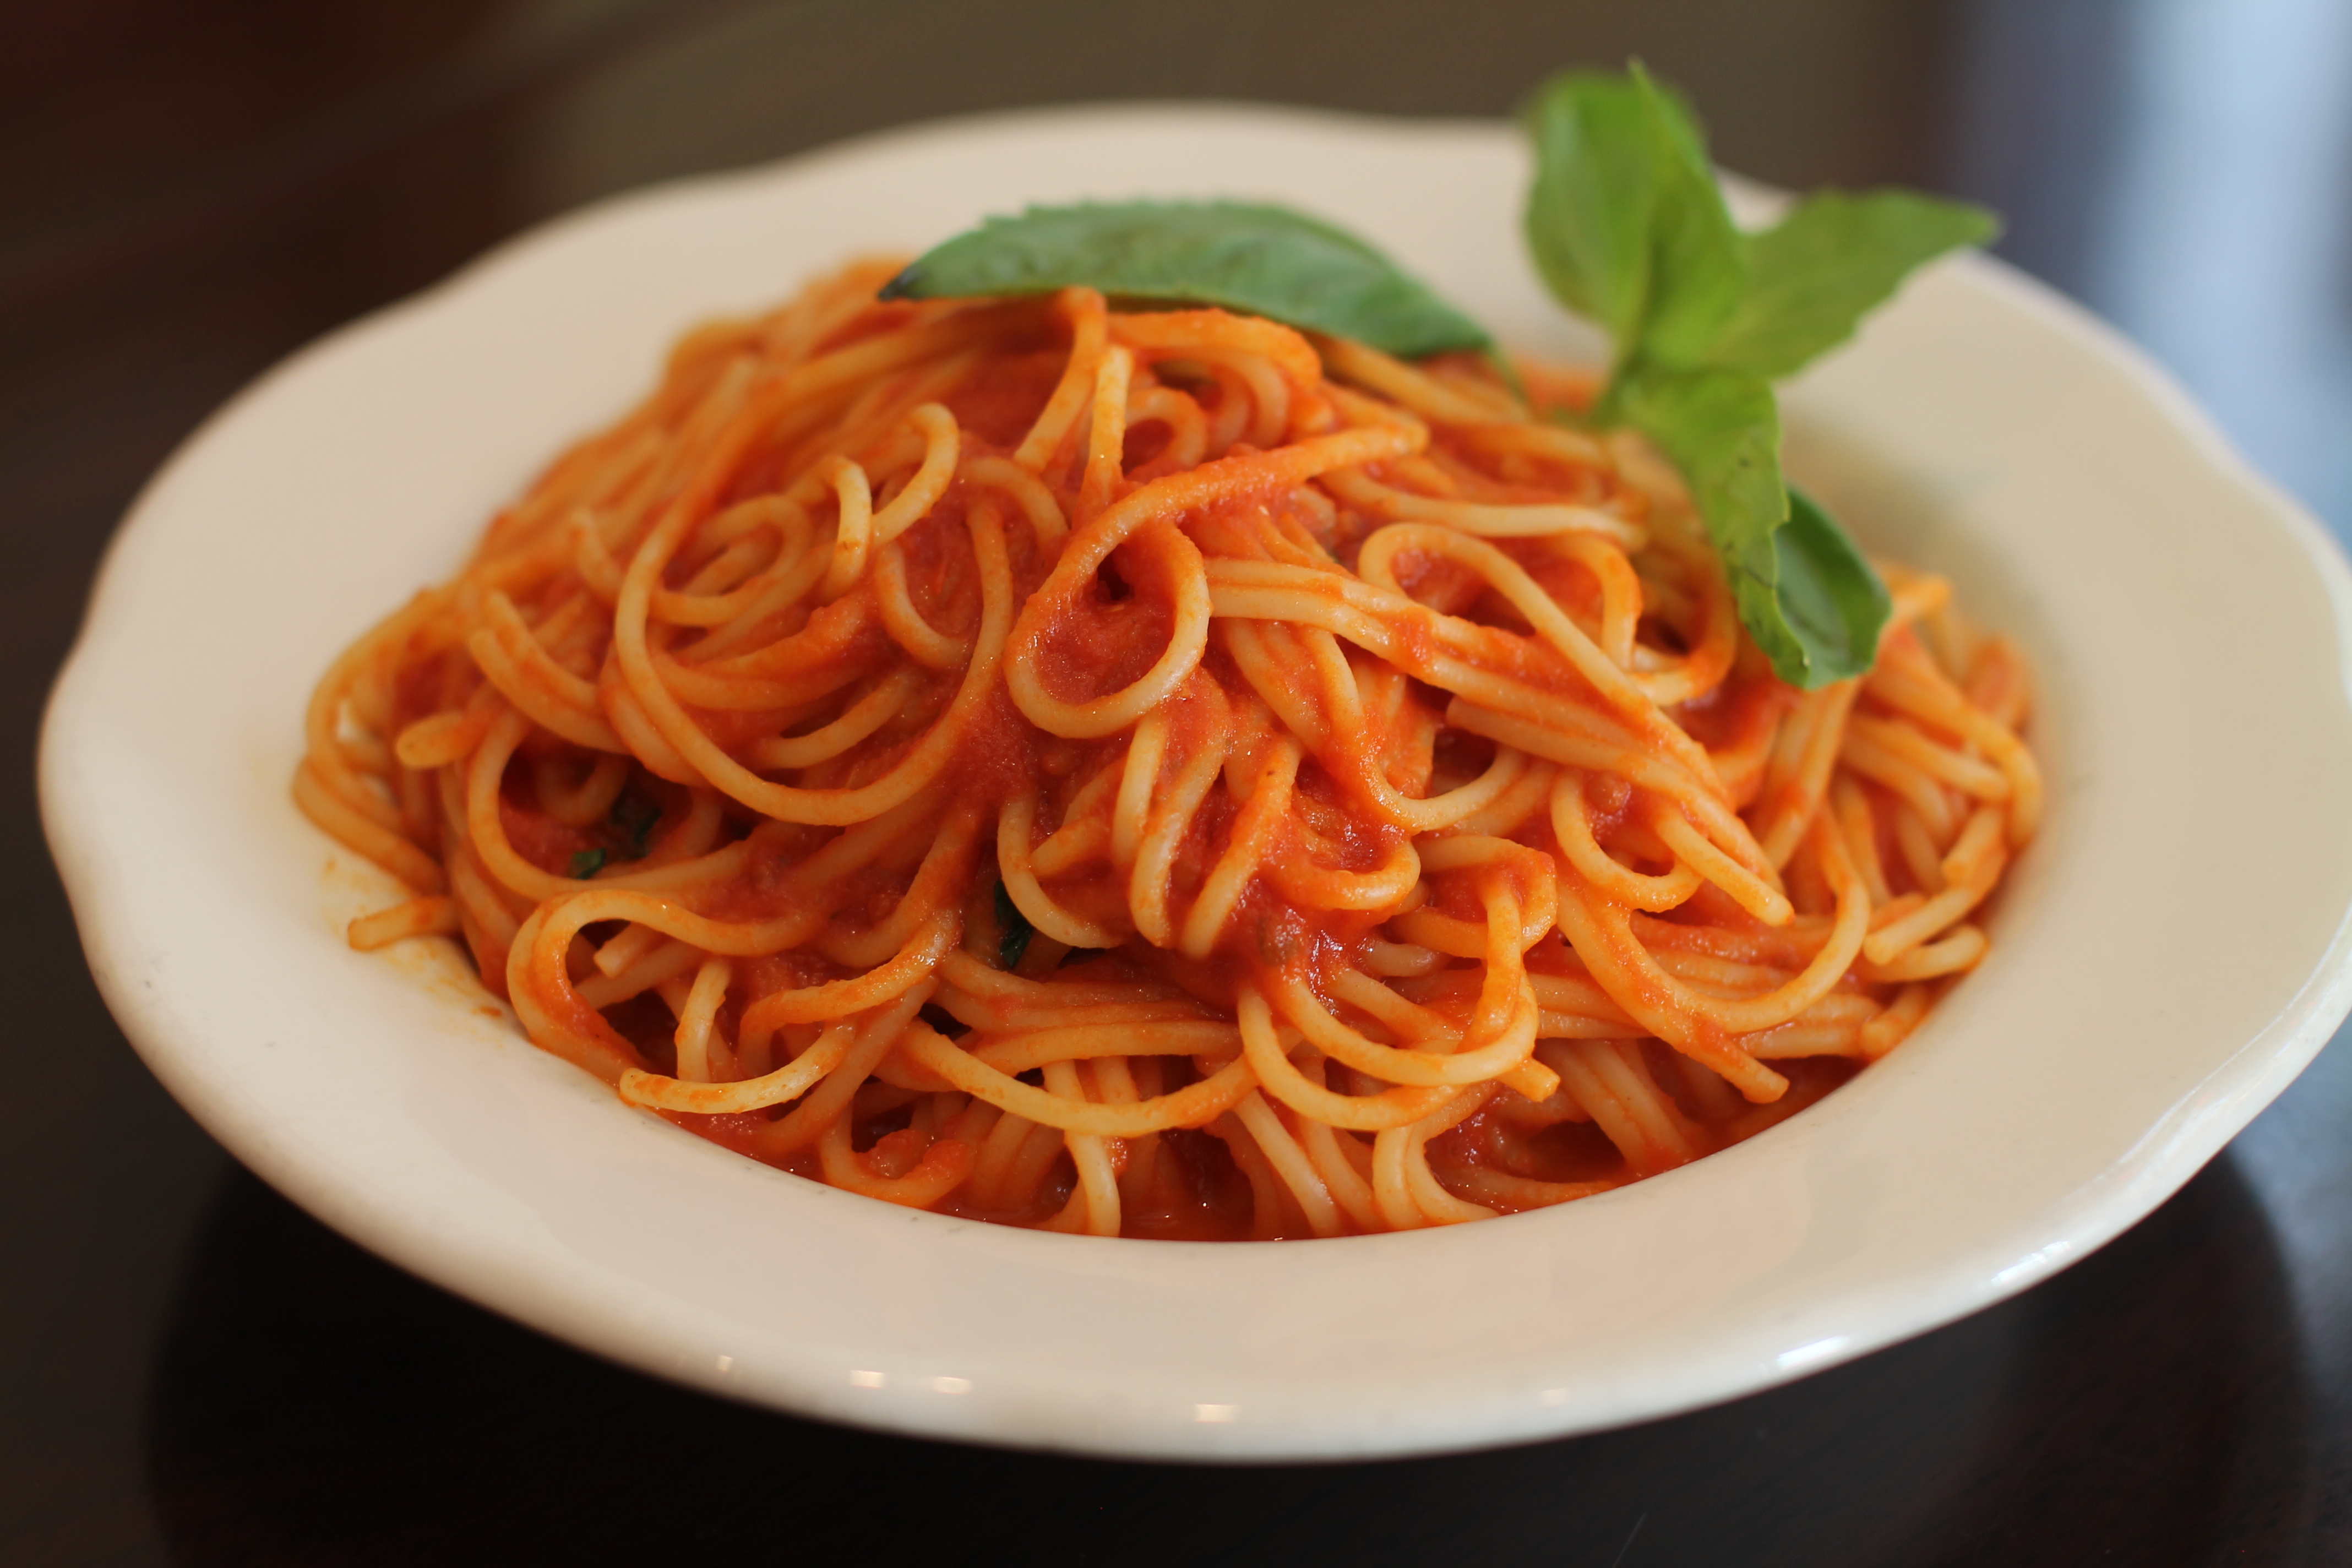 Order 1. Spaghettini alla Pomodoro food online from Pomodoro ristorante store, New York on bringmethat.com